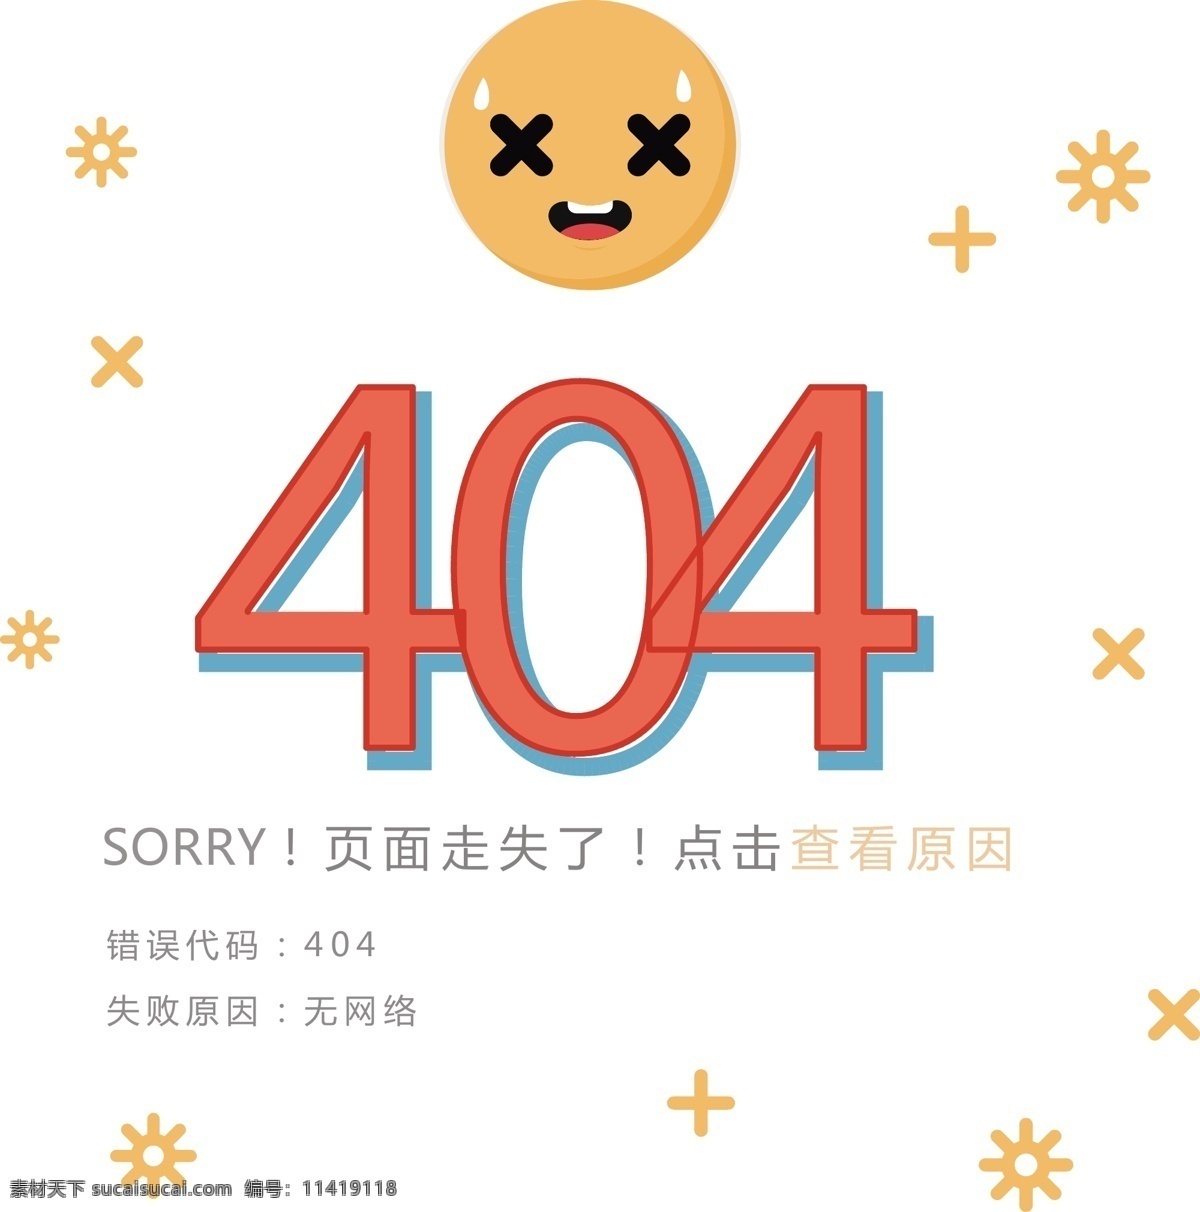 报 错 界面 艺术 字 app 合集 网页 错误 页 缺失 浏览器 表情 线性 图标 404sorry 空 状态 返回